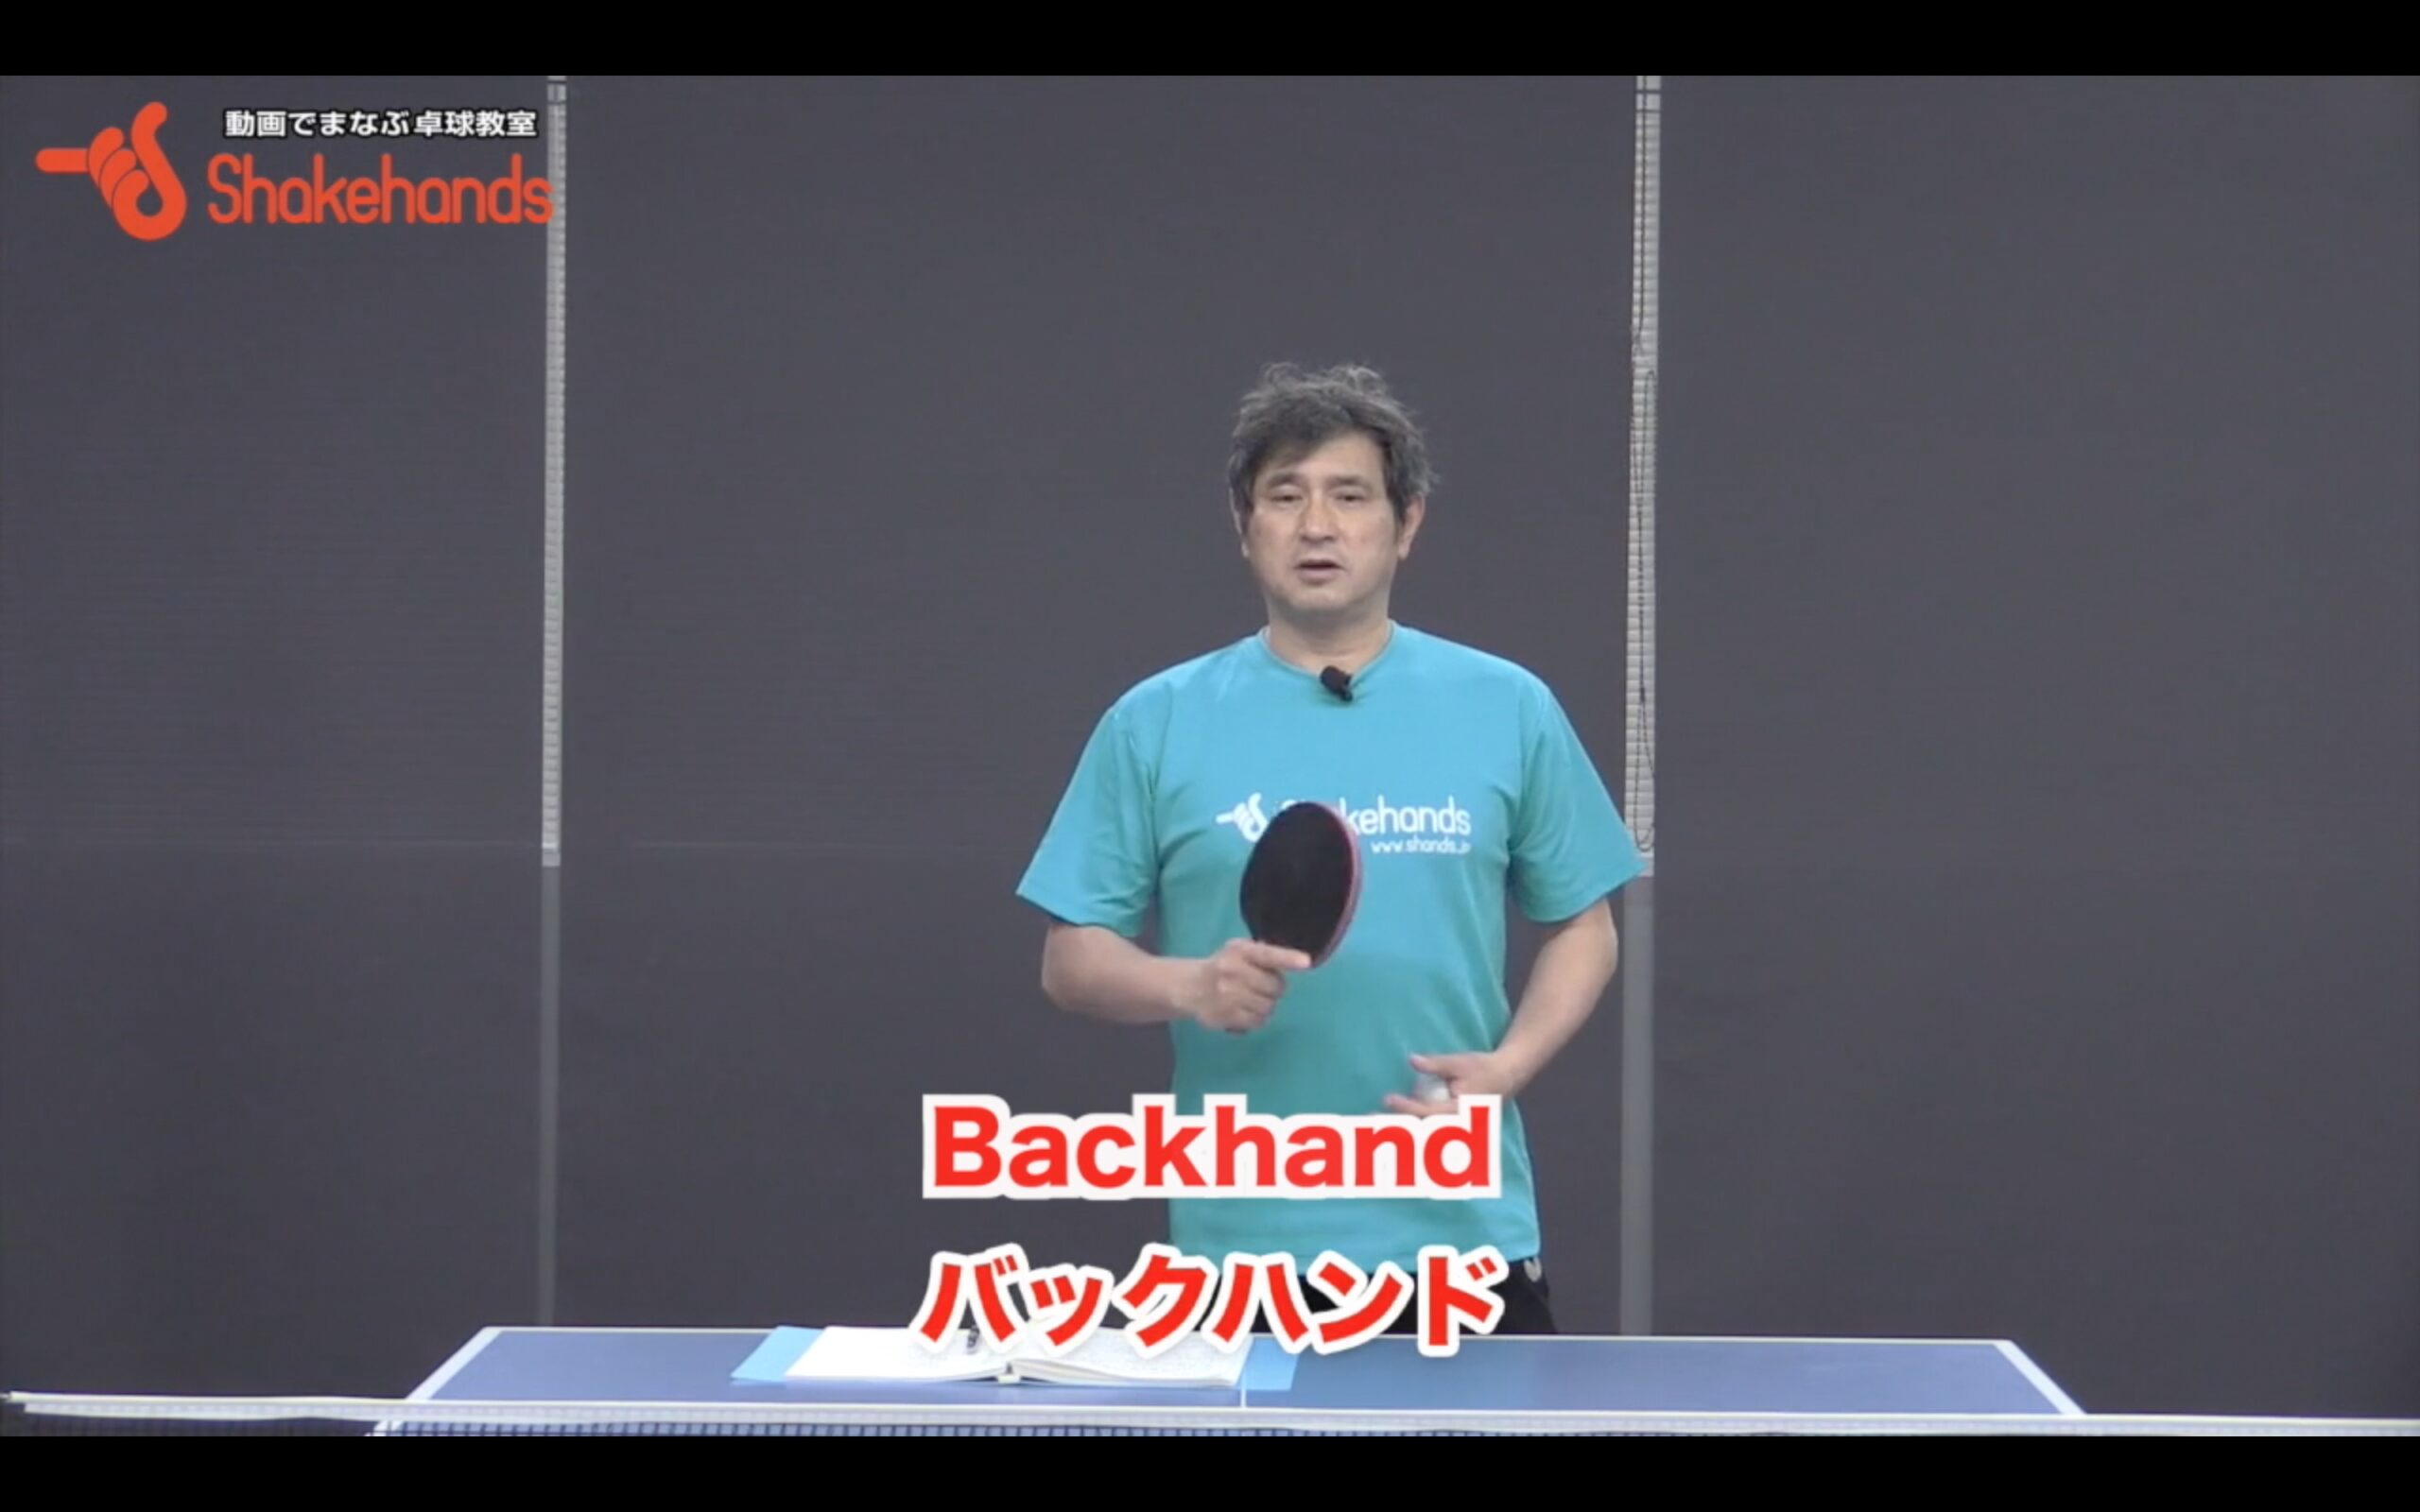 Basic Backhand